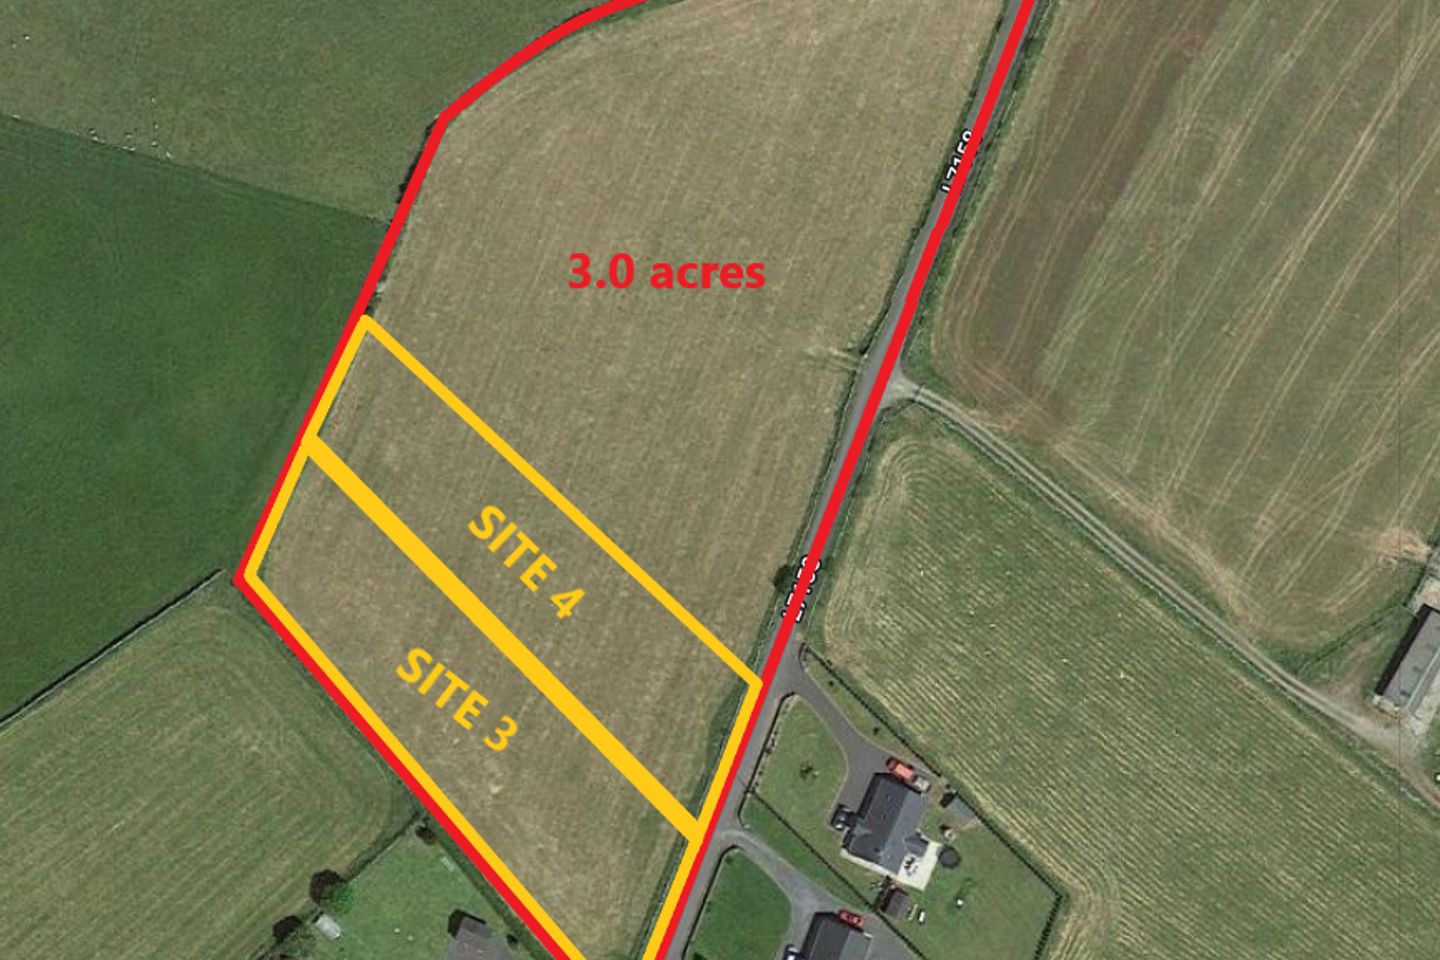 3.0 acres of Agricultural Lands, Bresk, Kiltulla, Athenry, Co. Galway